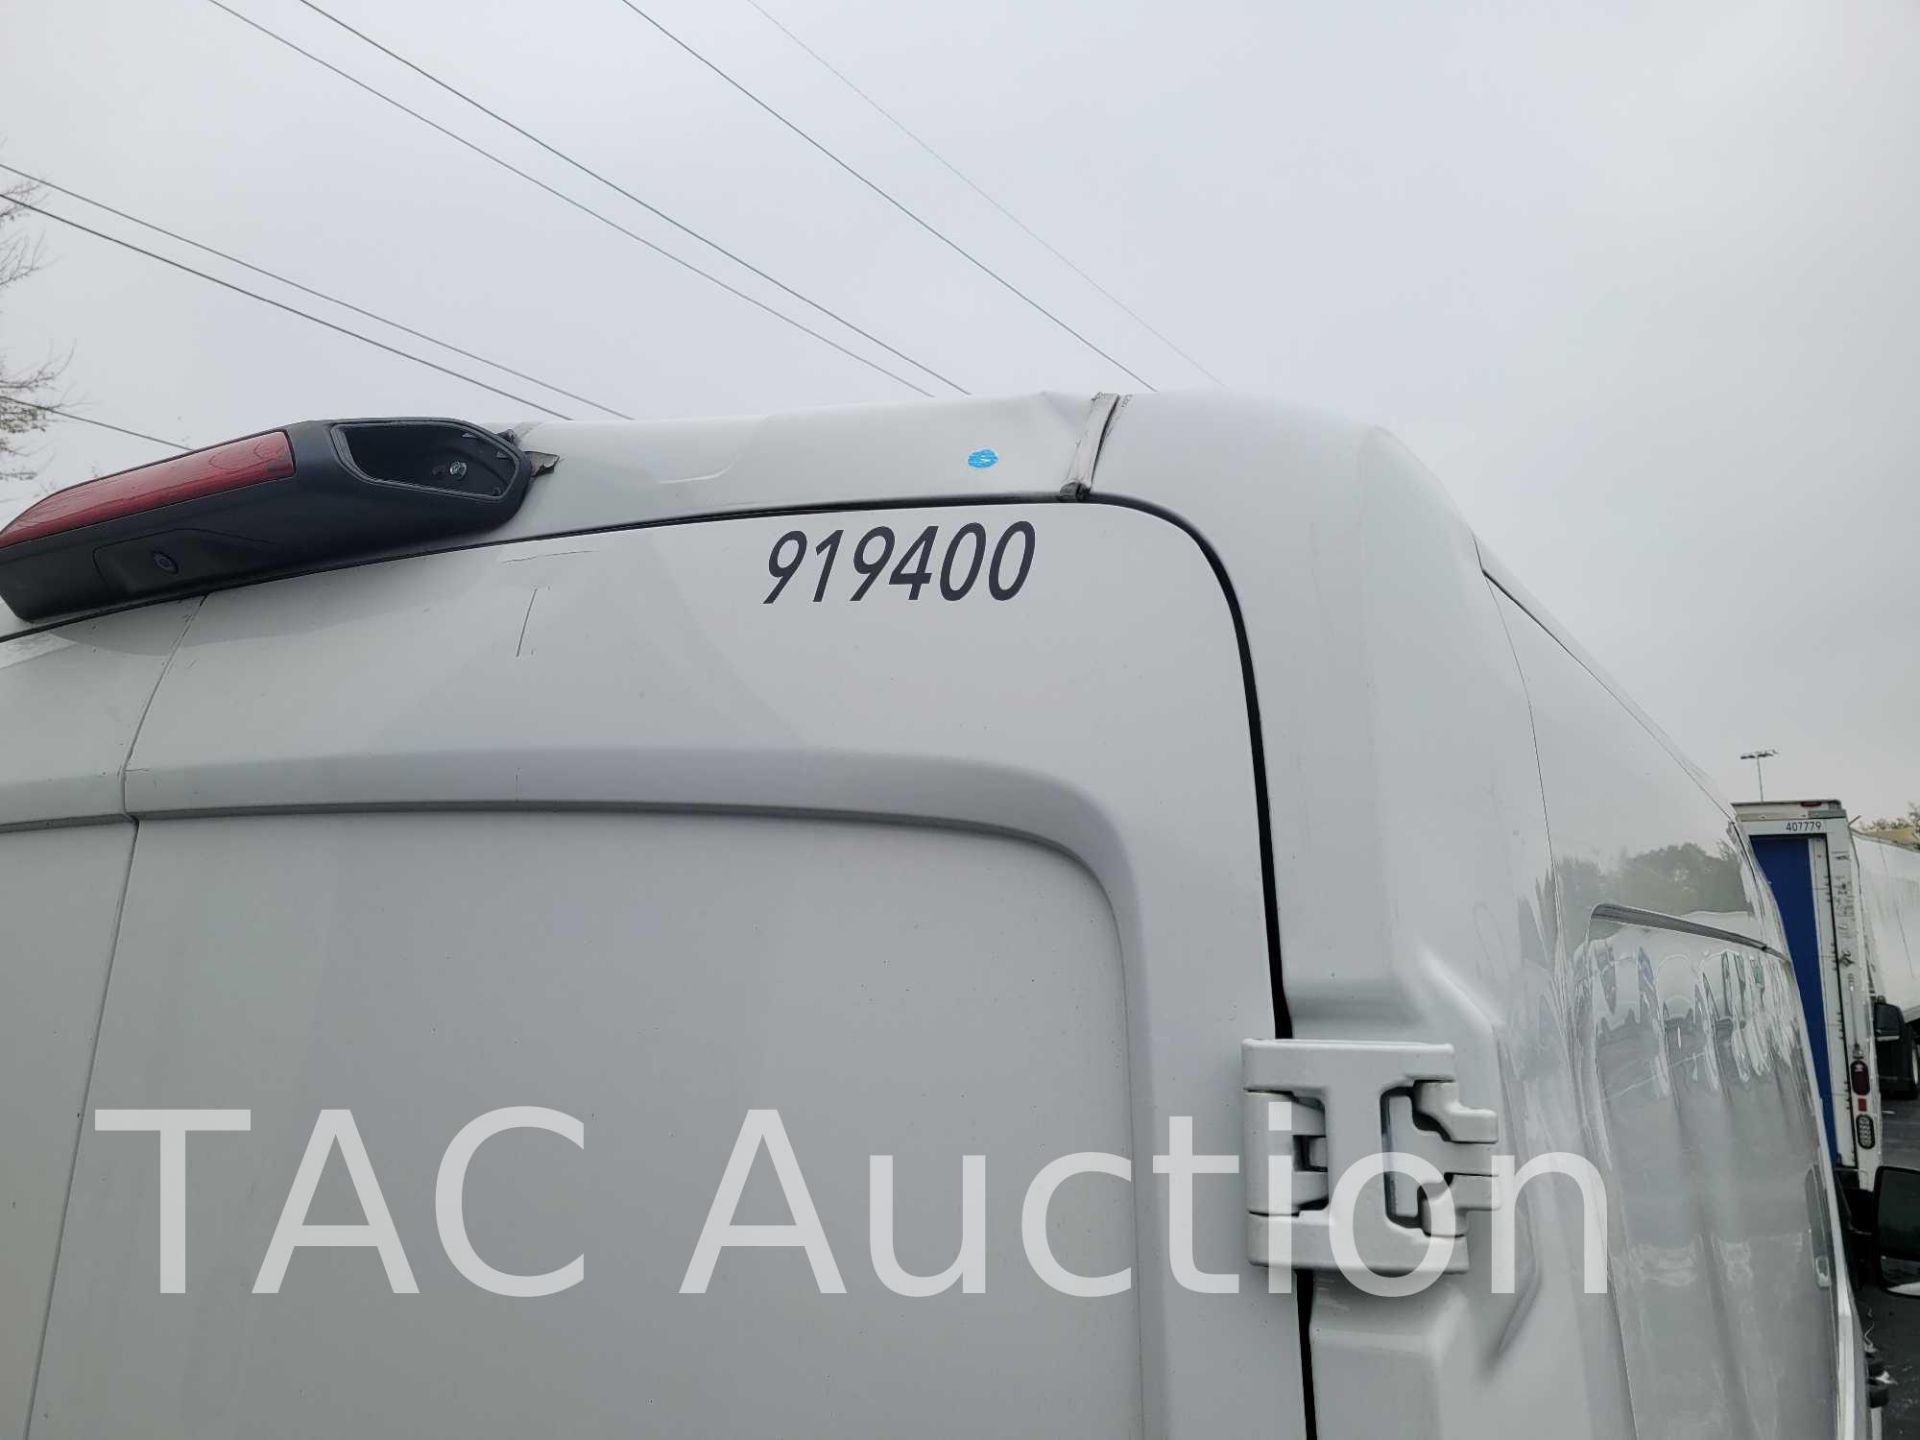 2019 Ford Transit 150 Cargo Van - Image 35 of 60